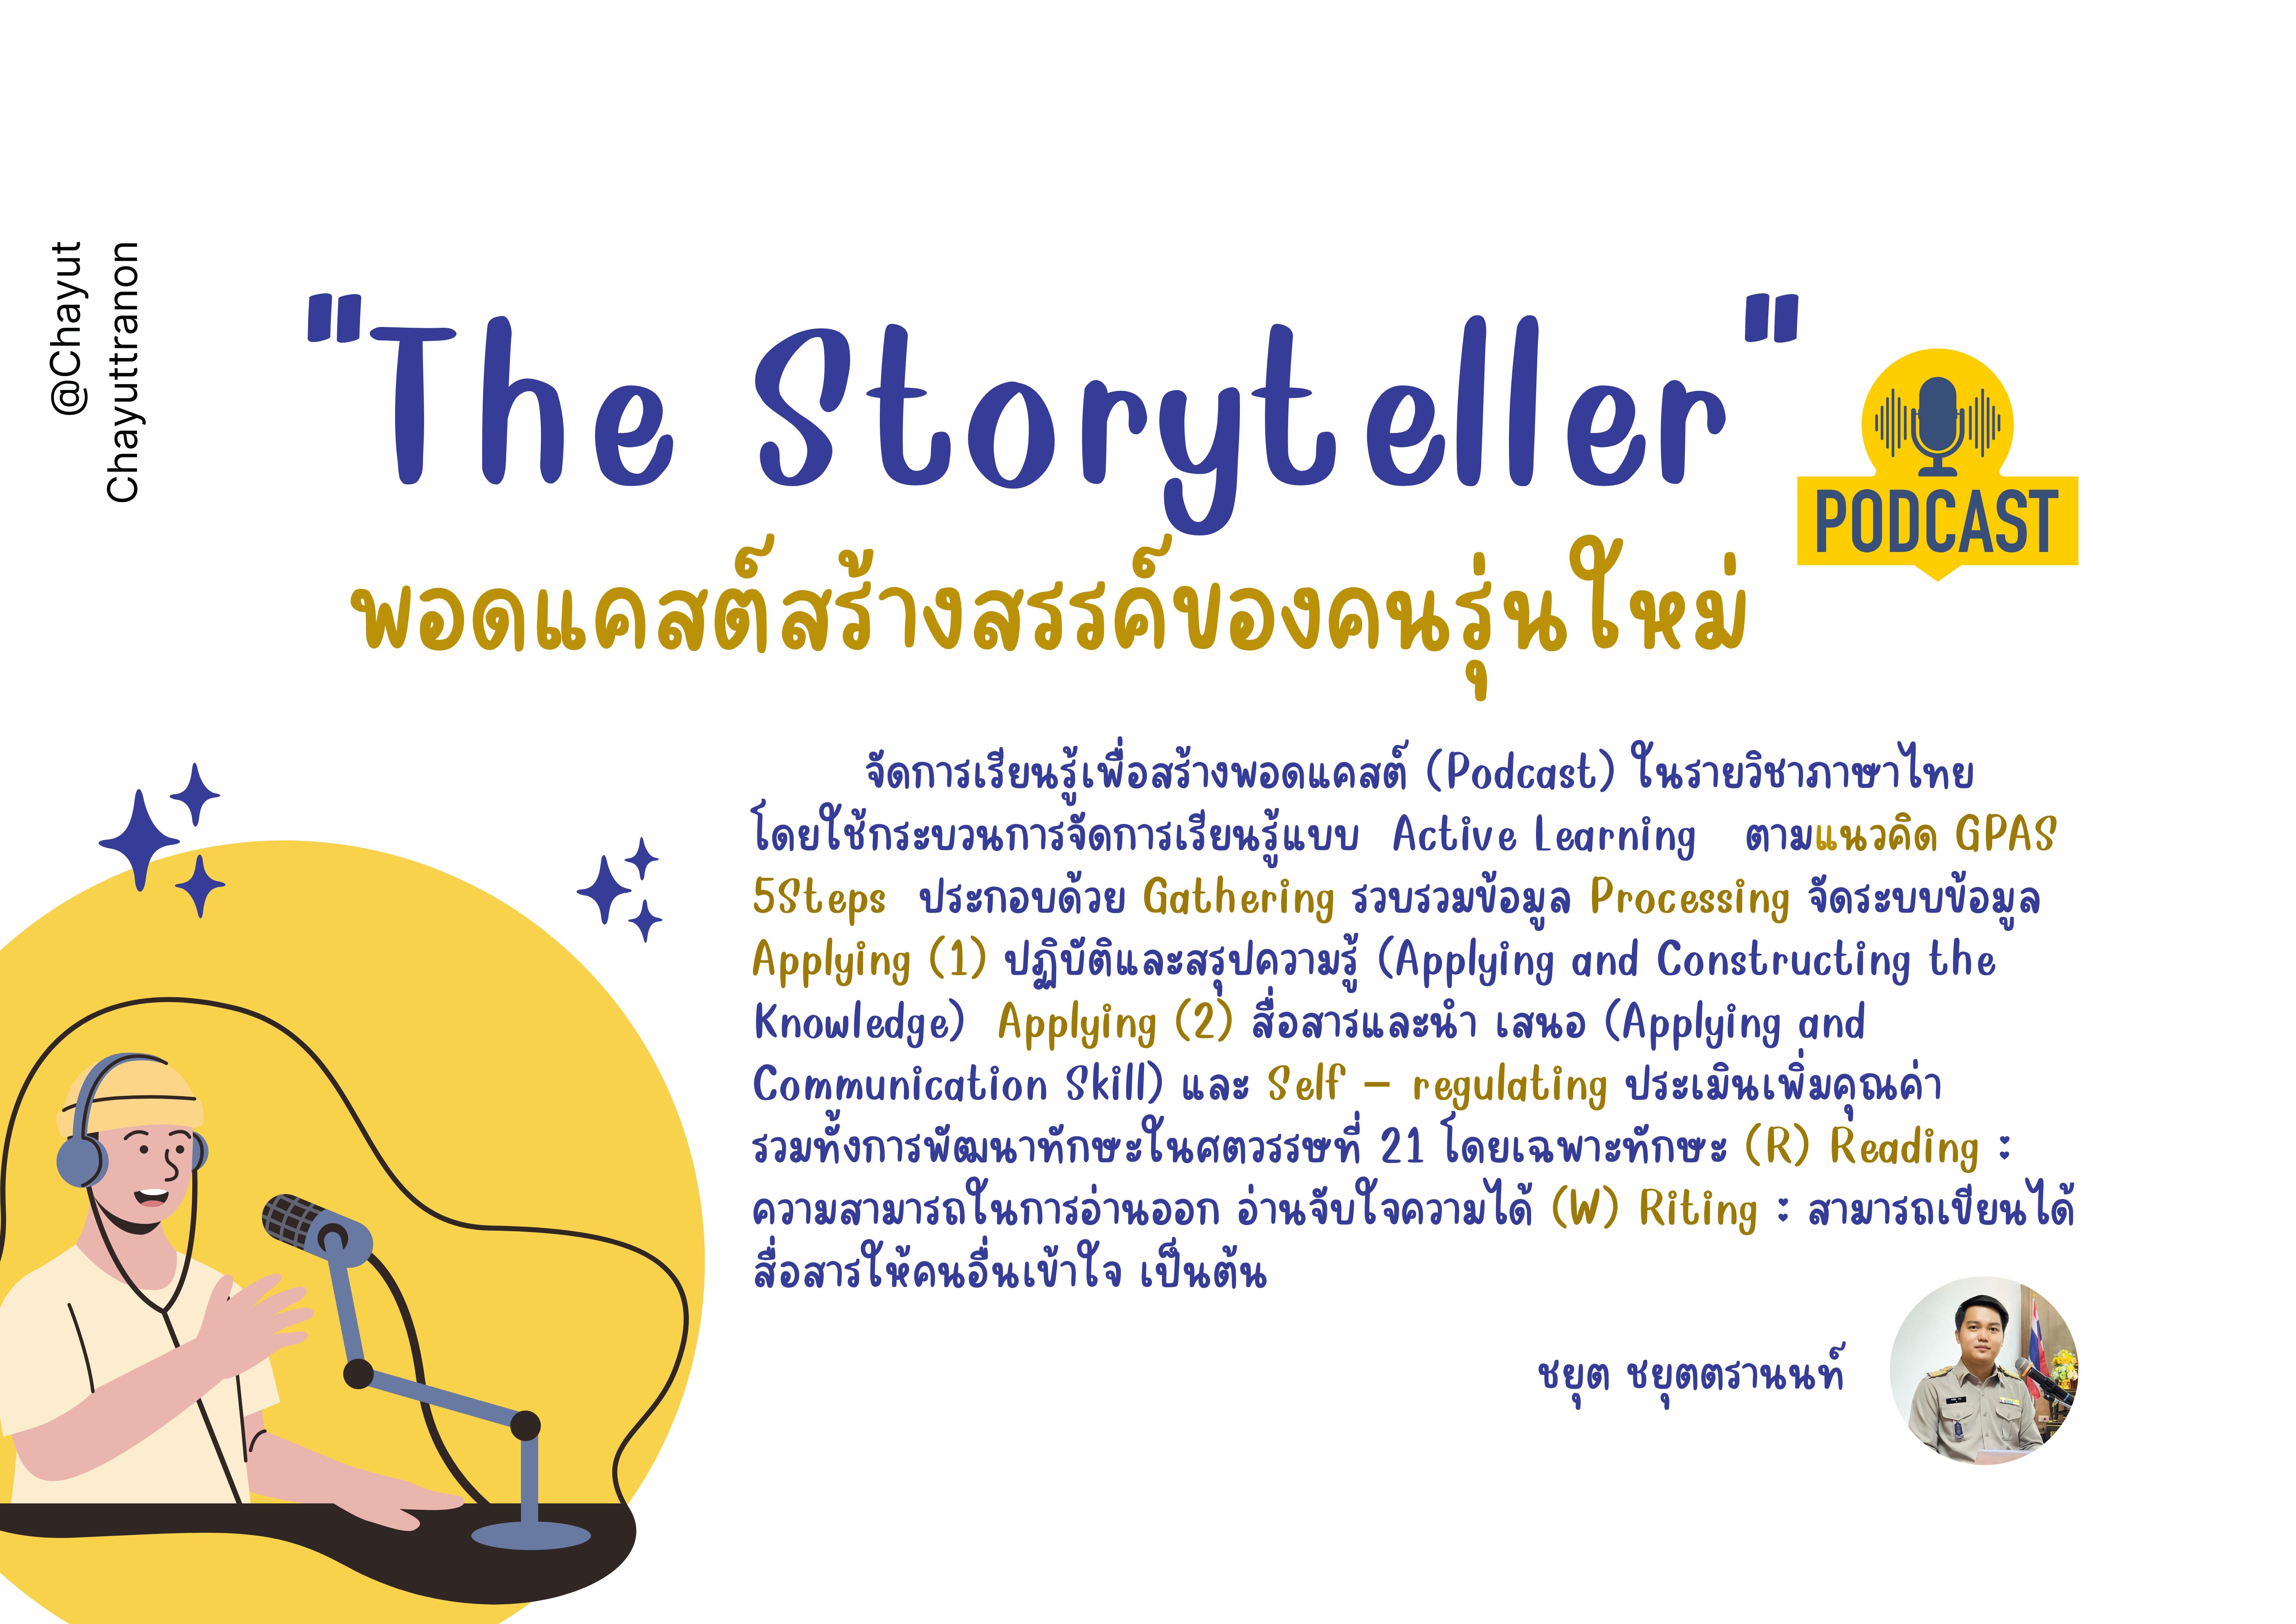 ภาพประกอบไอเดีย "The Storyteller"  พอดแคสต์สร้างสรรค์ของคนรุ่นใหม่